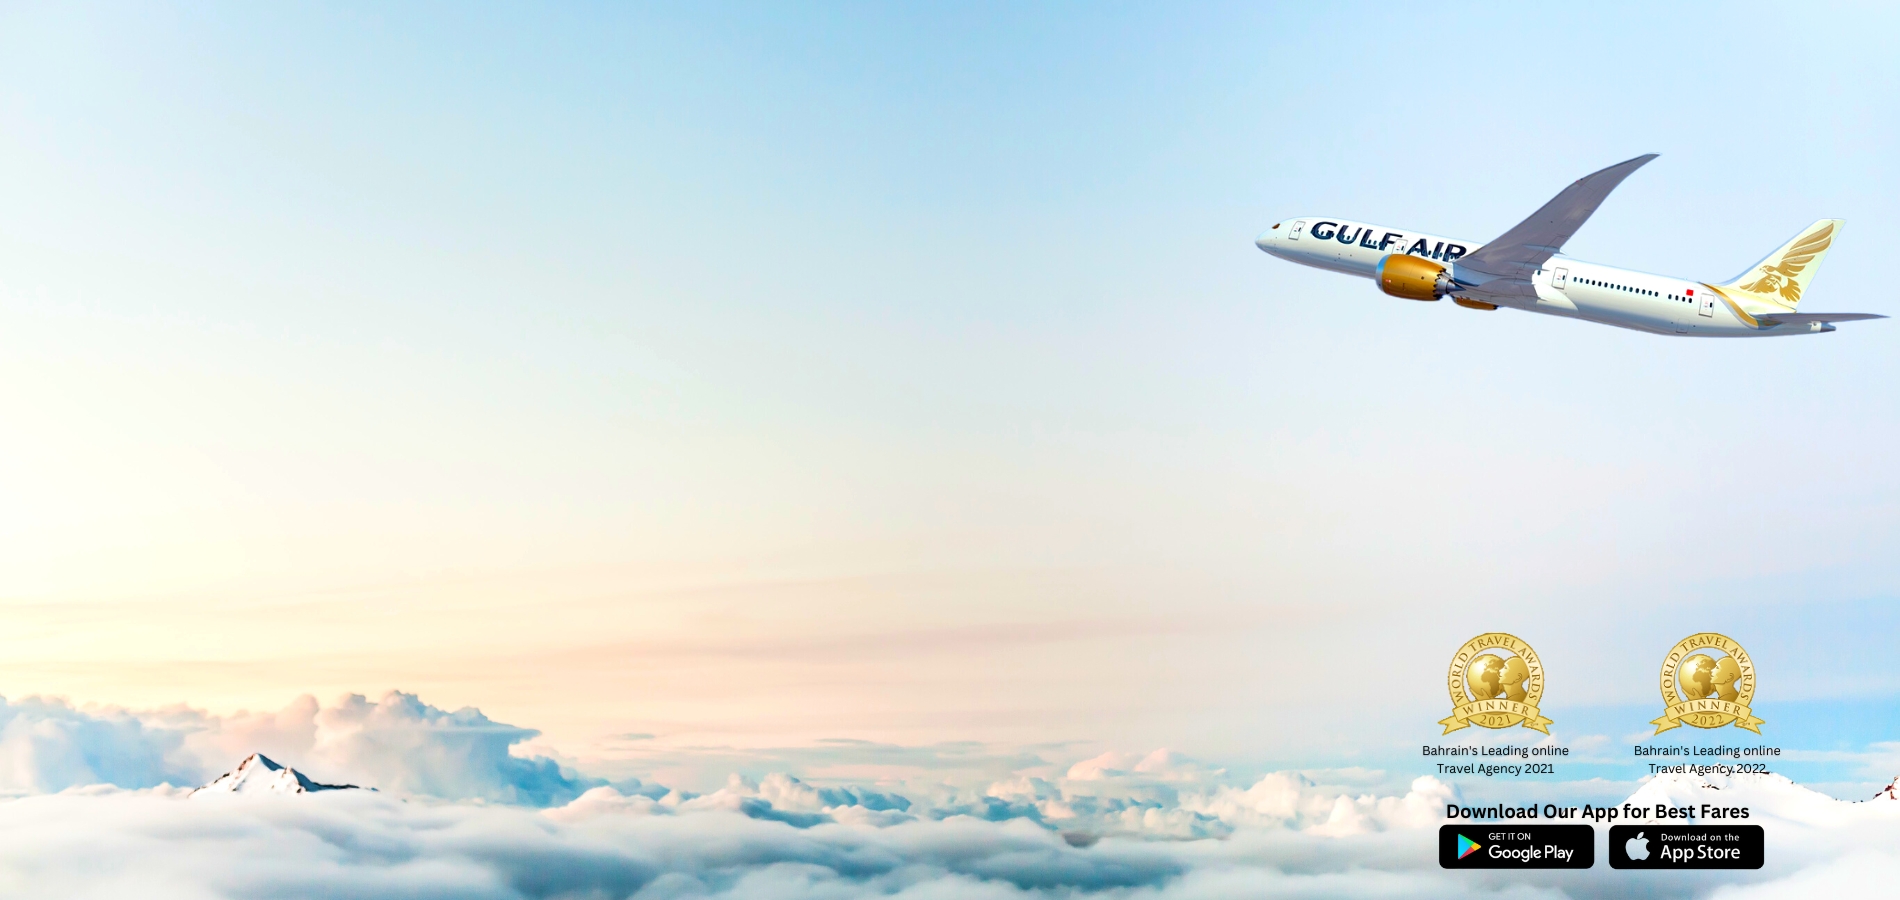 GULF AIR FLIGHT TICKET  TO WORLD